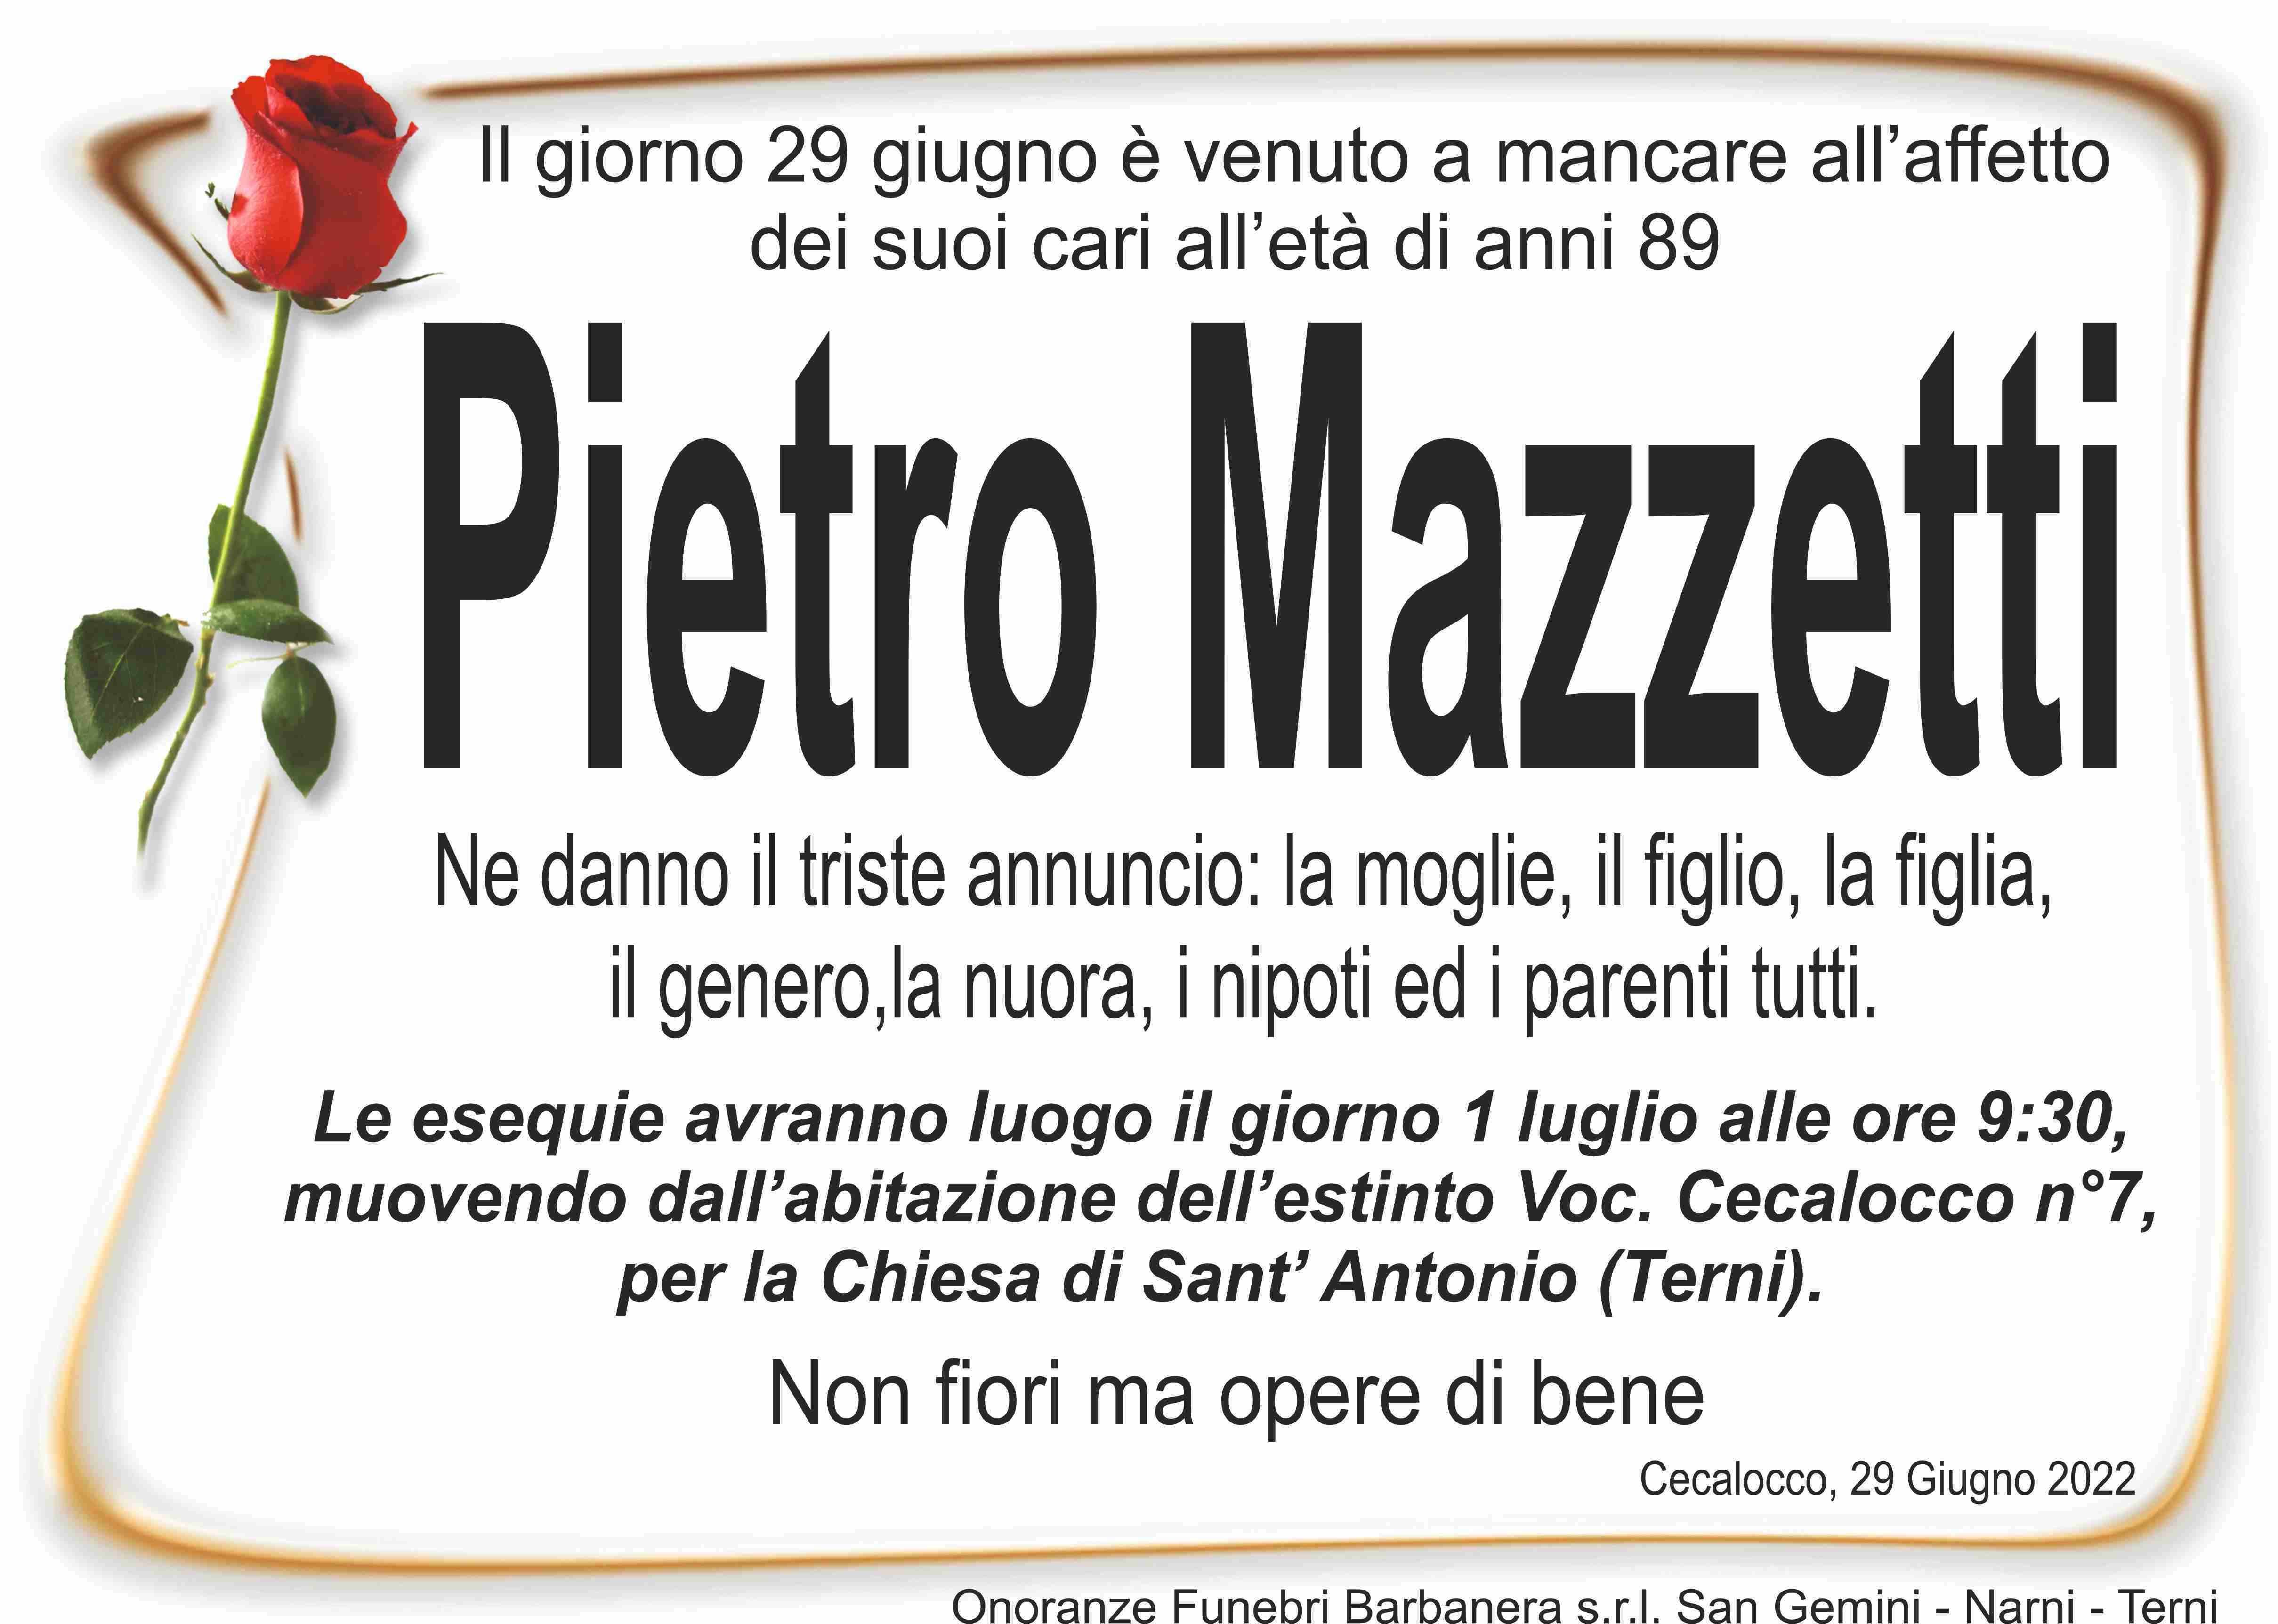 Pietro Mazzetti